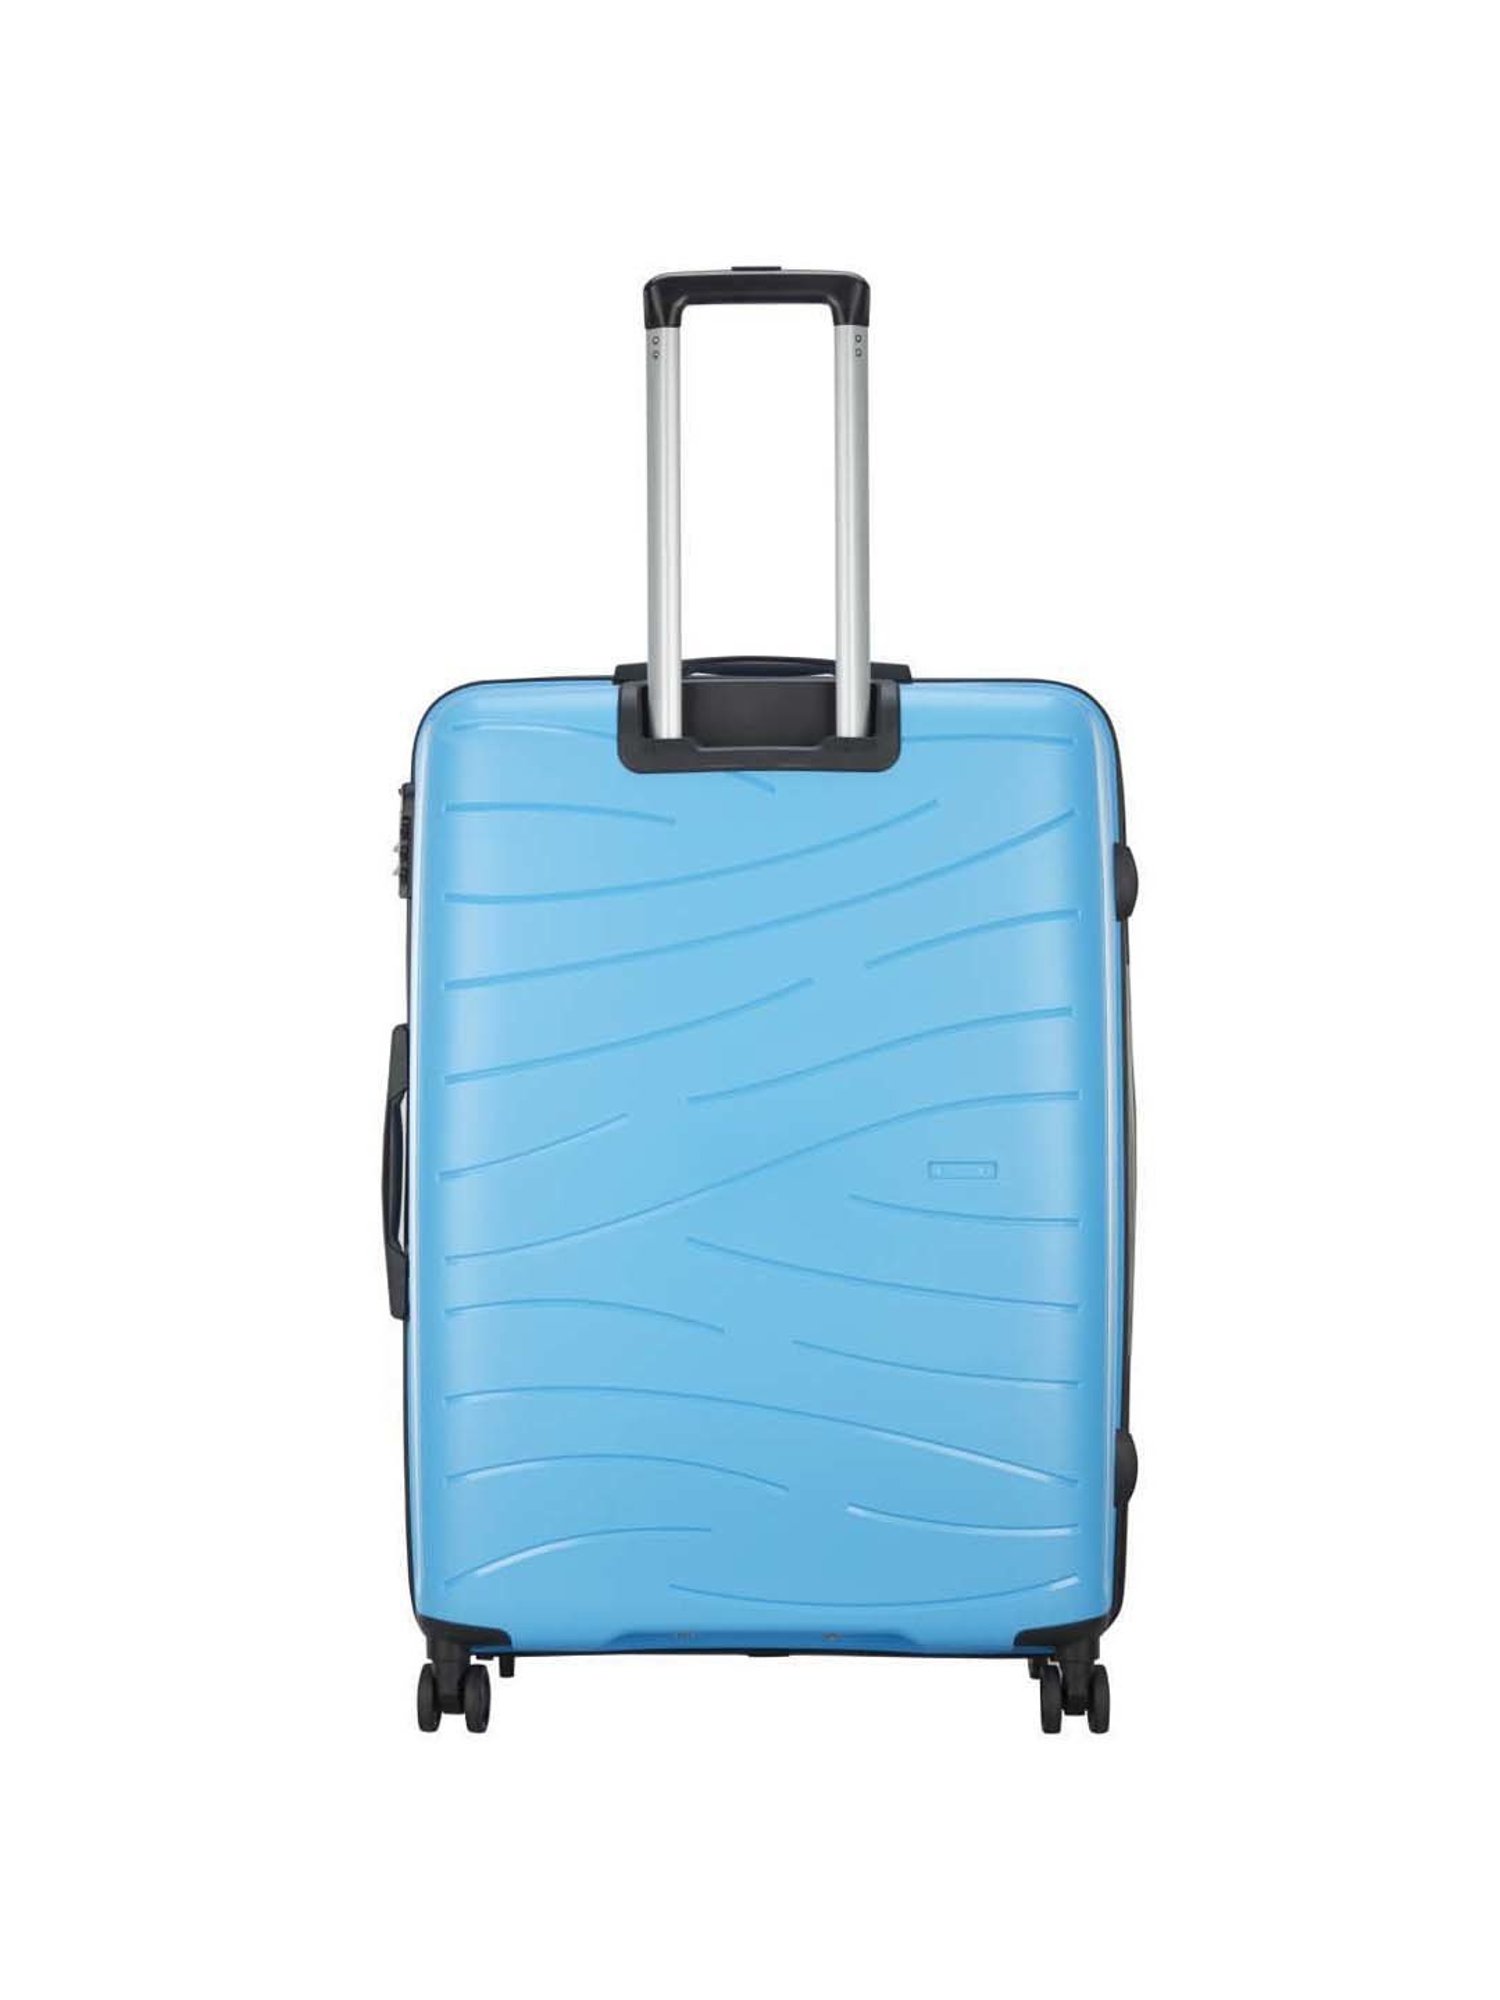 Sky Bird Safari ABS Luggage Trolley Bag Piece Medium Size 24 Inch, Silver |  lupon.gov.ph